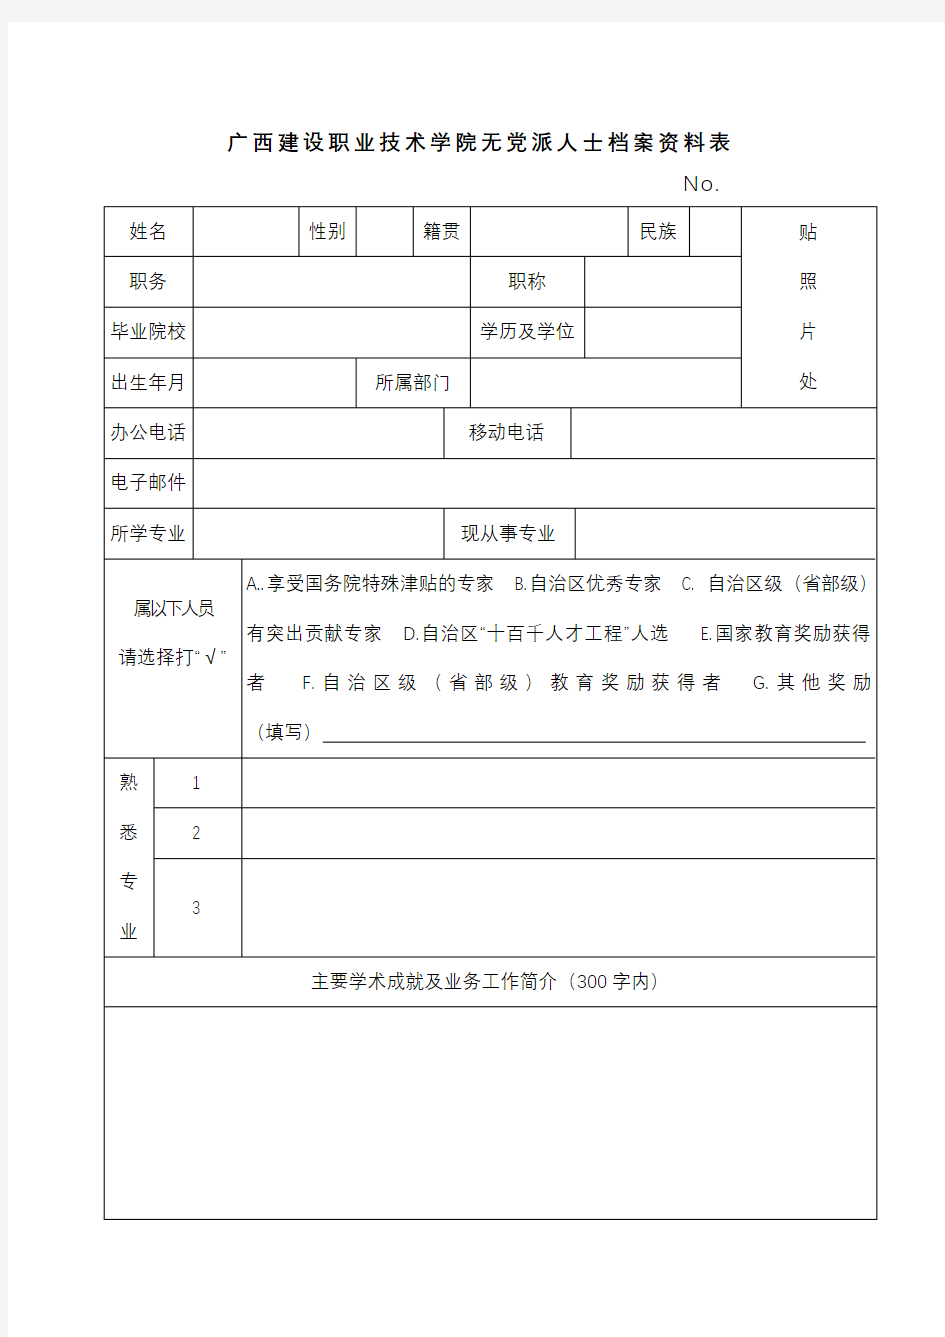 广西建设职业技术学院无党派人士档案资料表【模板】